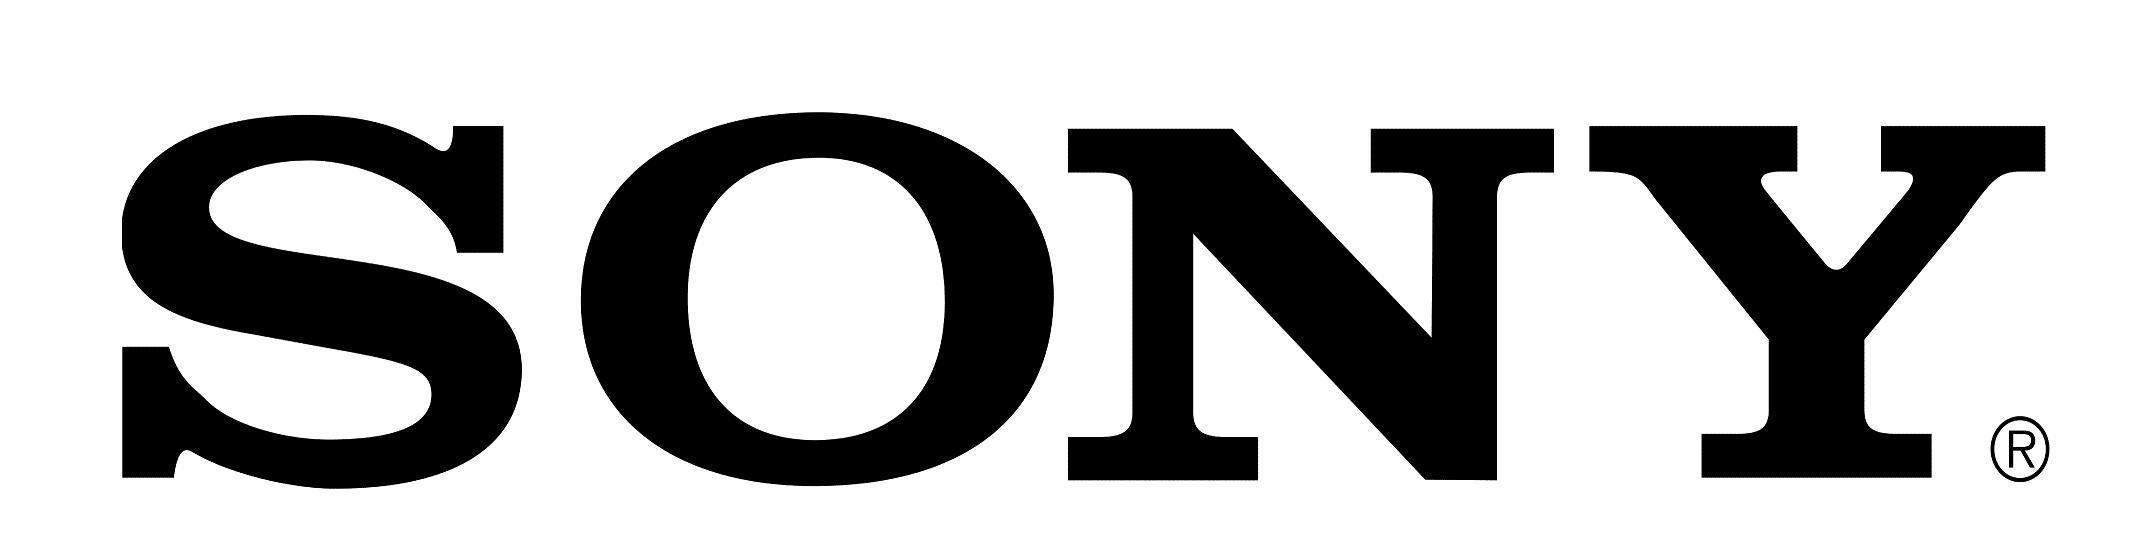 Sony Phone Logo - Pin by Timothy Murray on Logos | Sony, Logos, Sony xperia